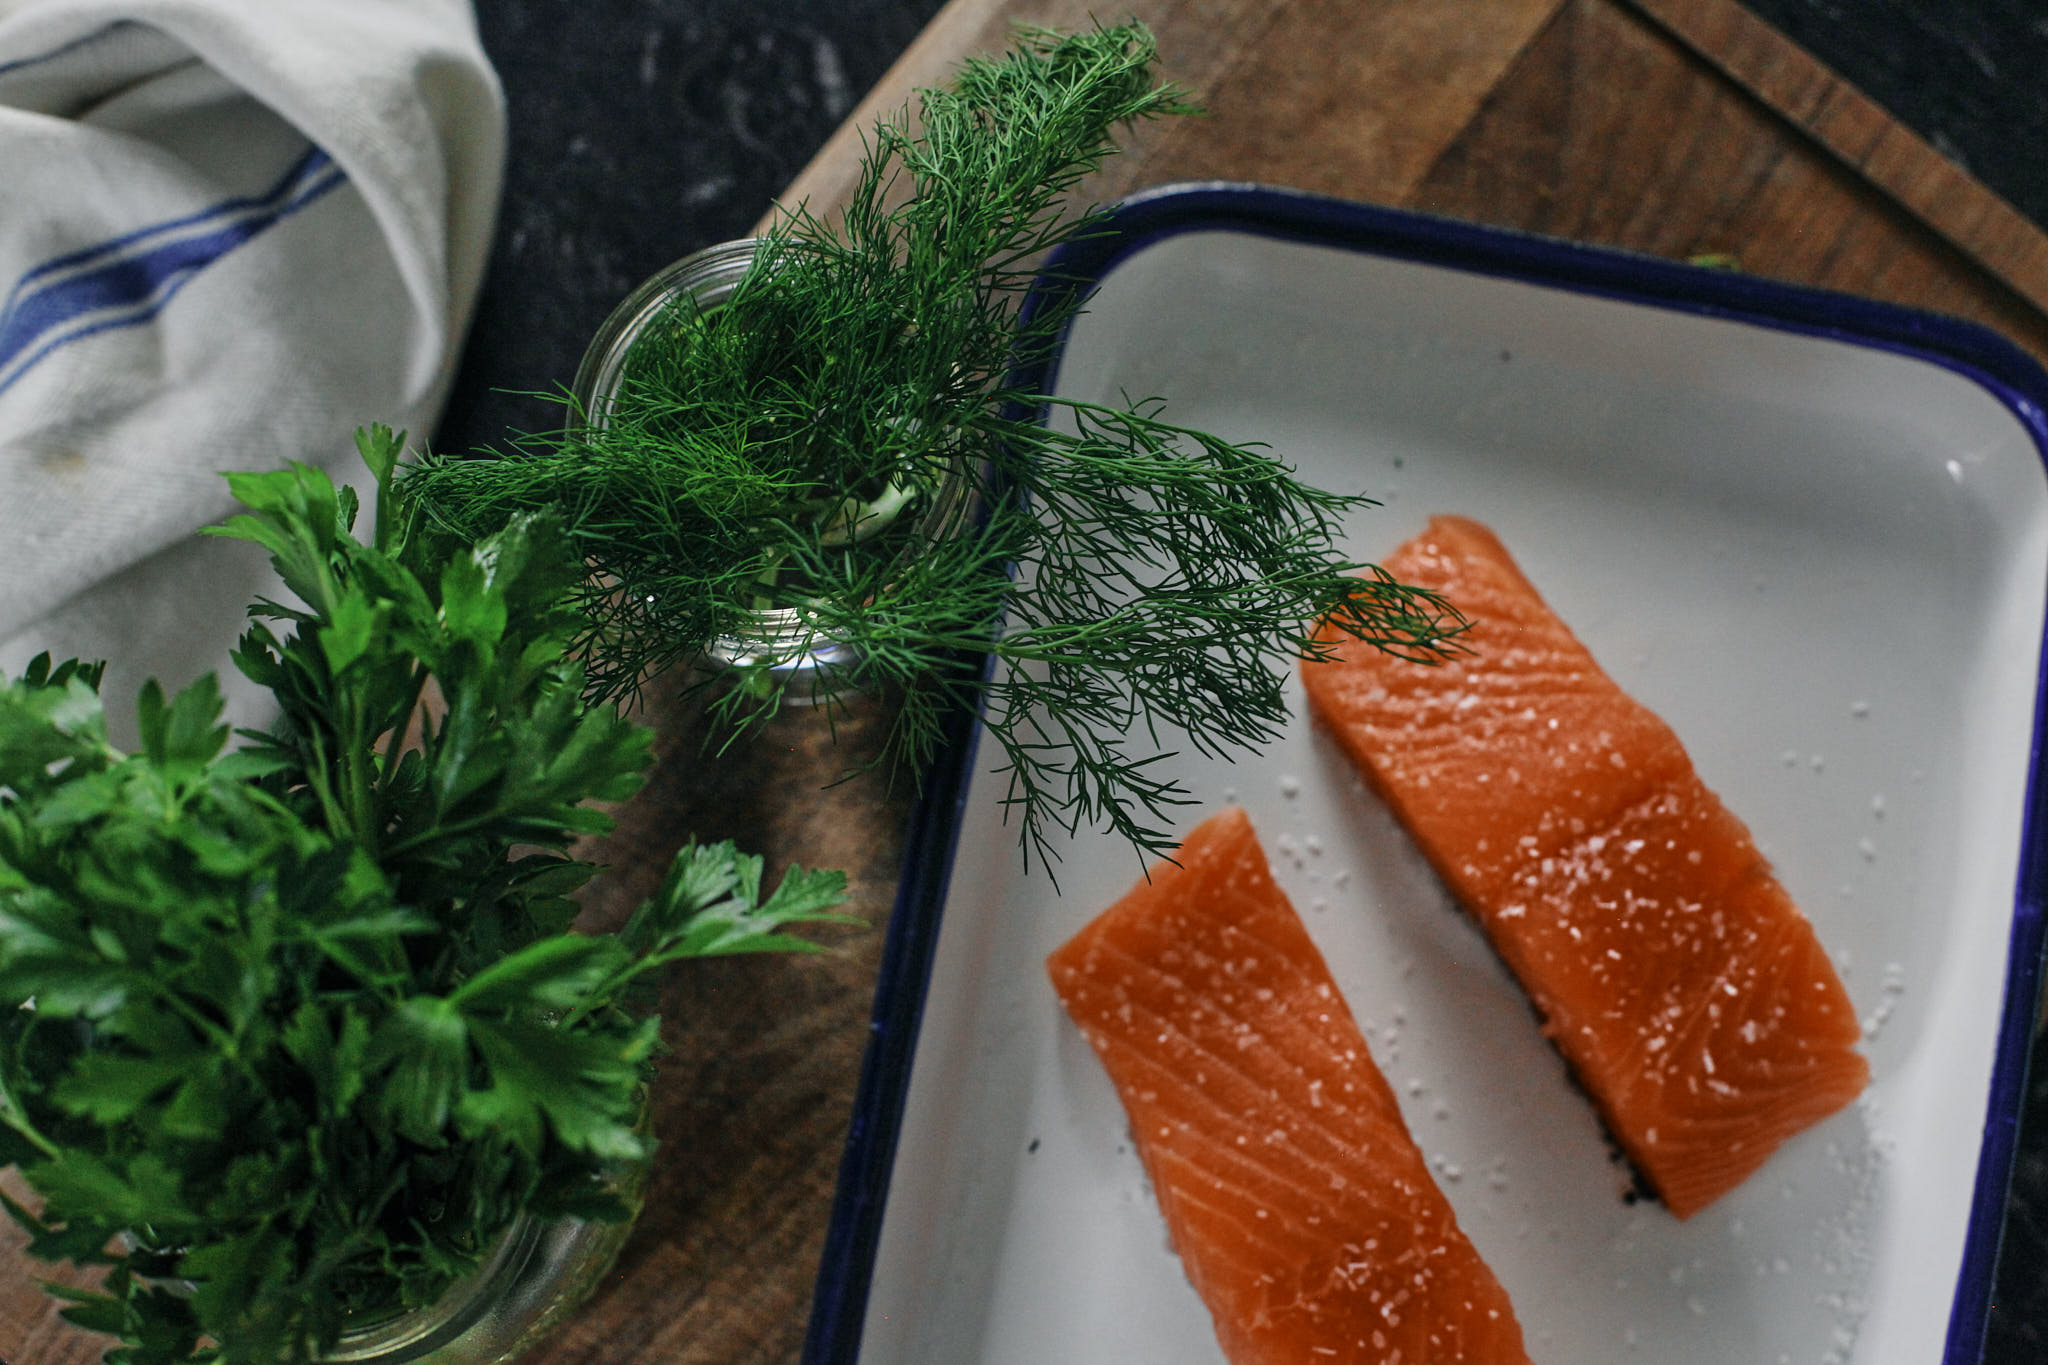 raw salmon filets next to green herbs